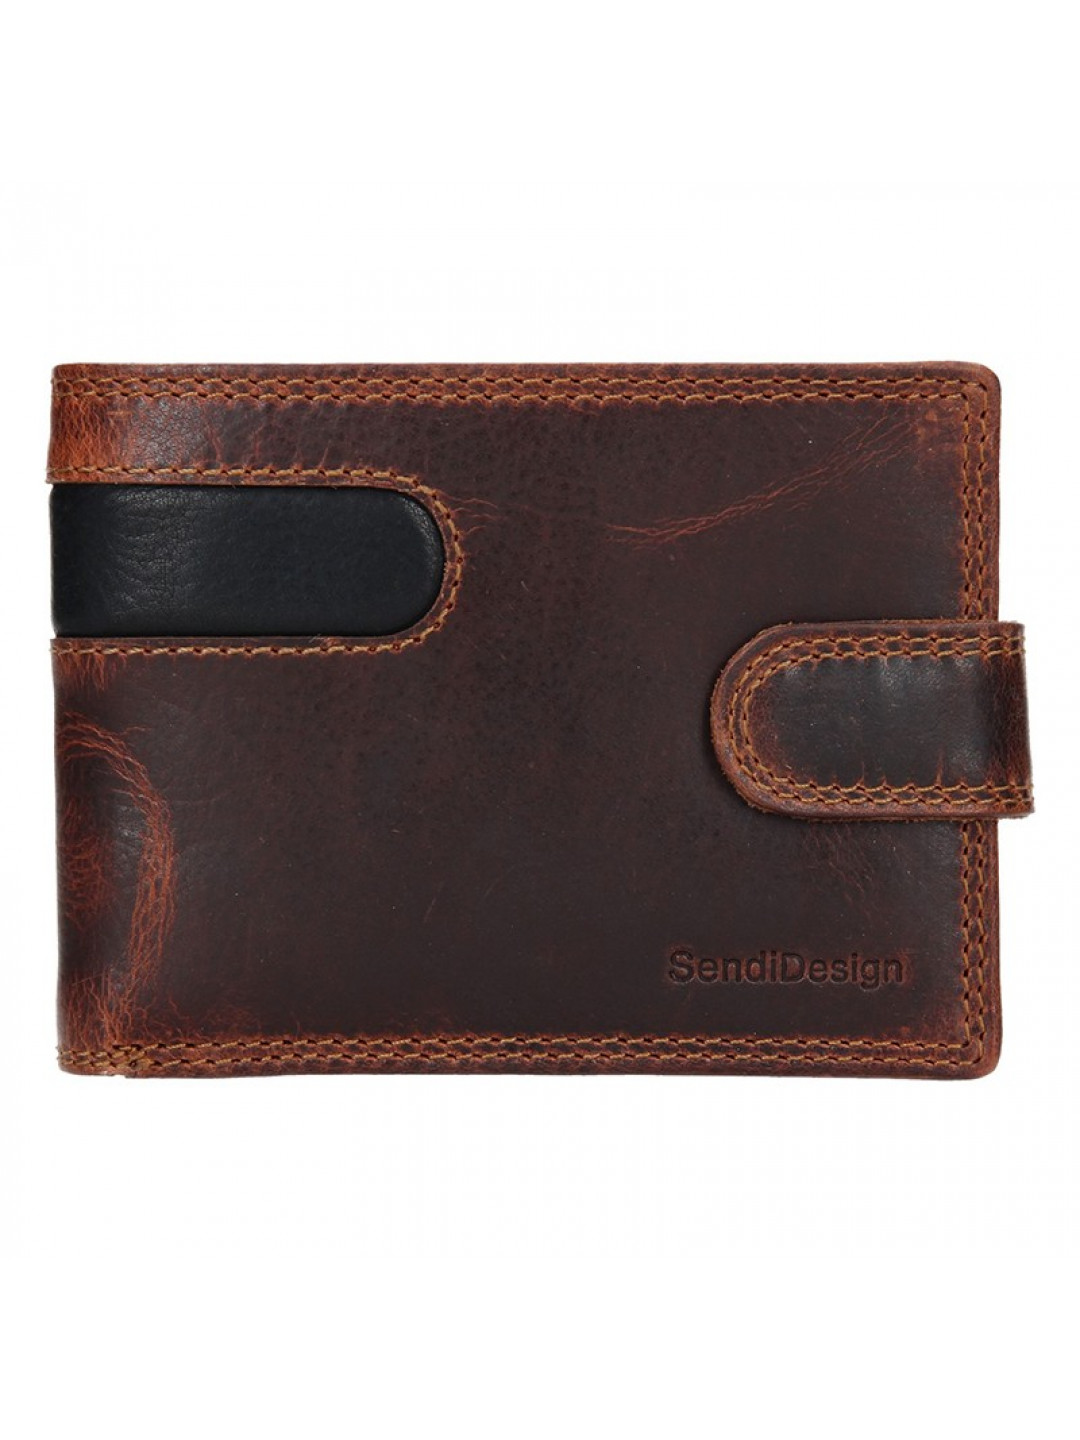 Pánská kožená peněženka SendiDesign Martin – hnědo-černá